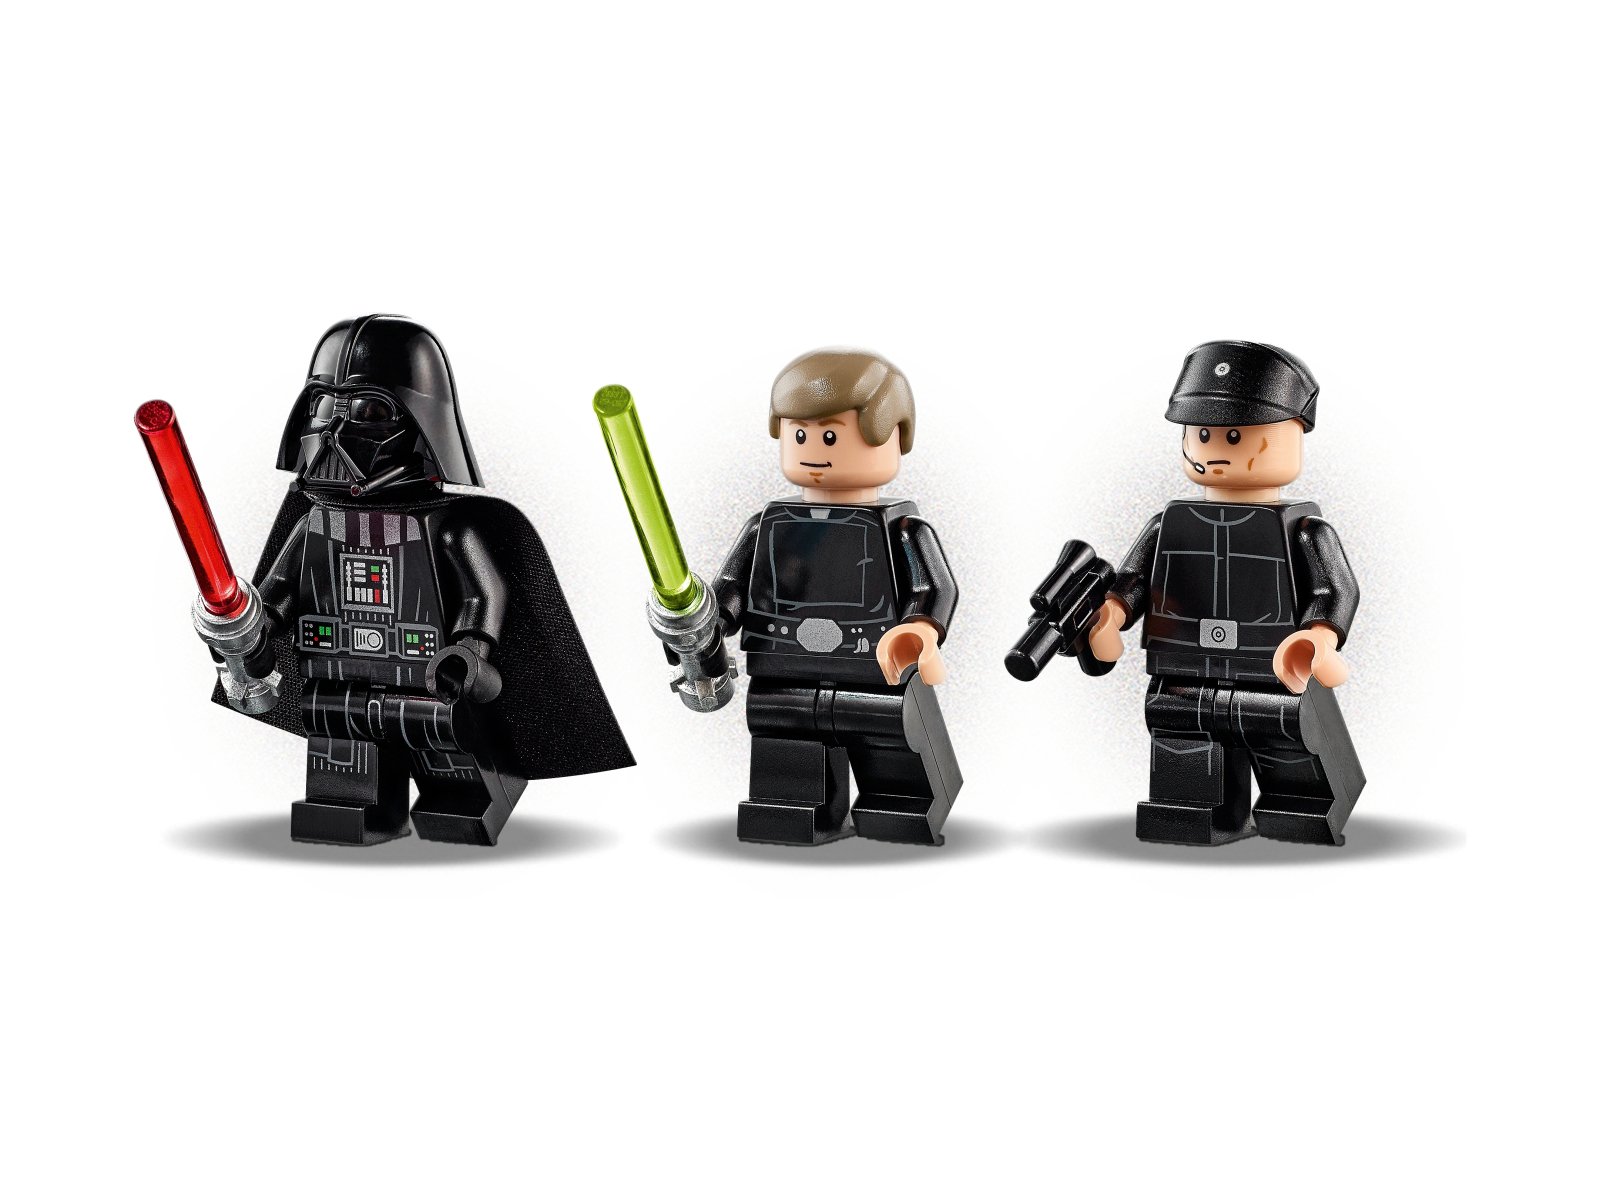 LEGO 75302 Star Wars Imperialny wahadłowiec™